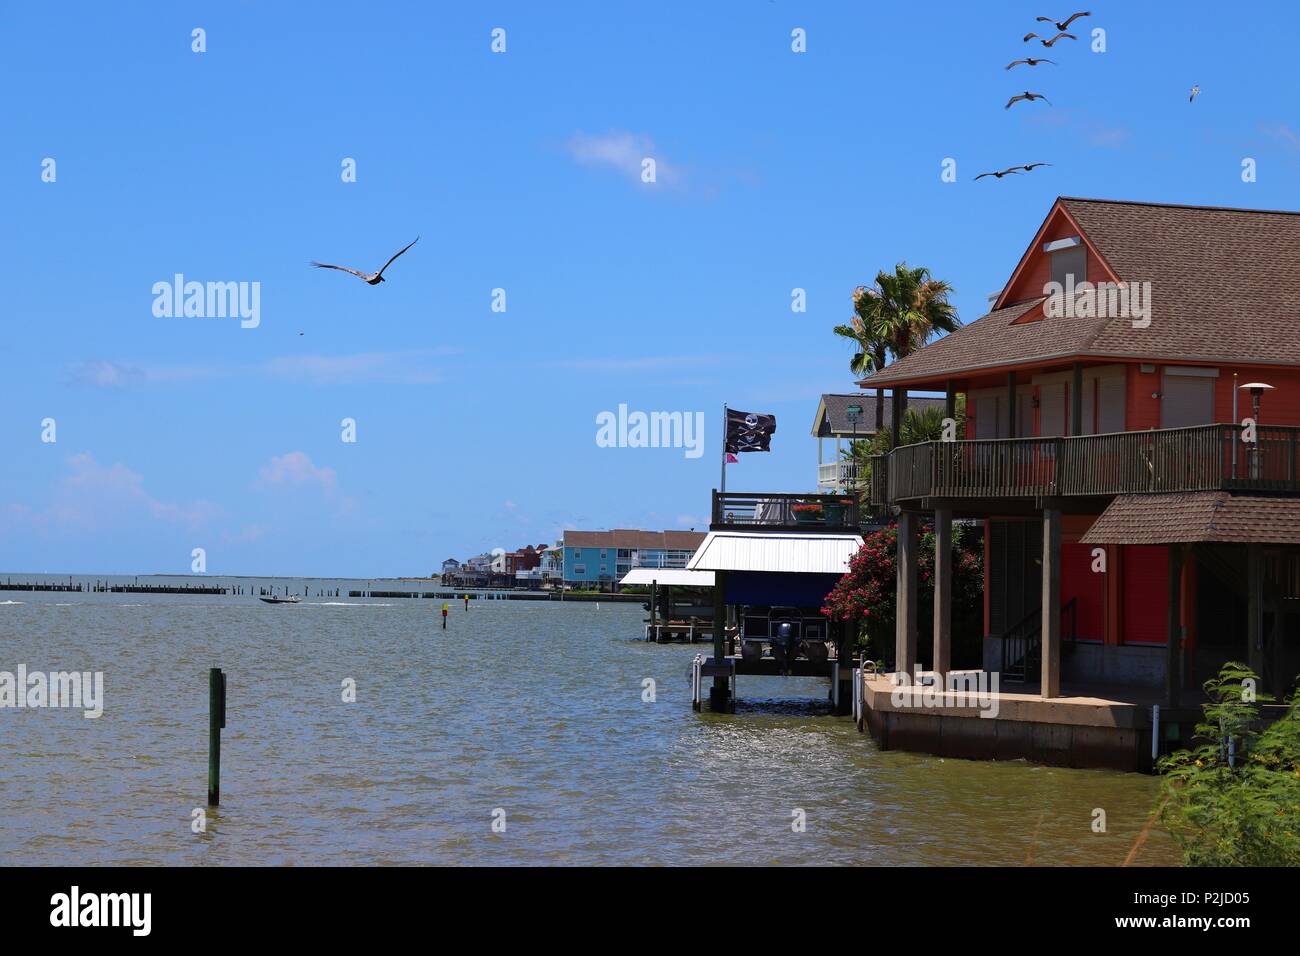 Waterfront homes in Galveston, Texas Gulf Coast, Stati Uniti d'America. Pellicani volare in formazione, paesaggio marittimo con la bandiera dei pirati. Foto Stock